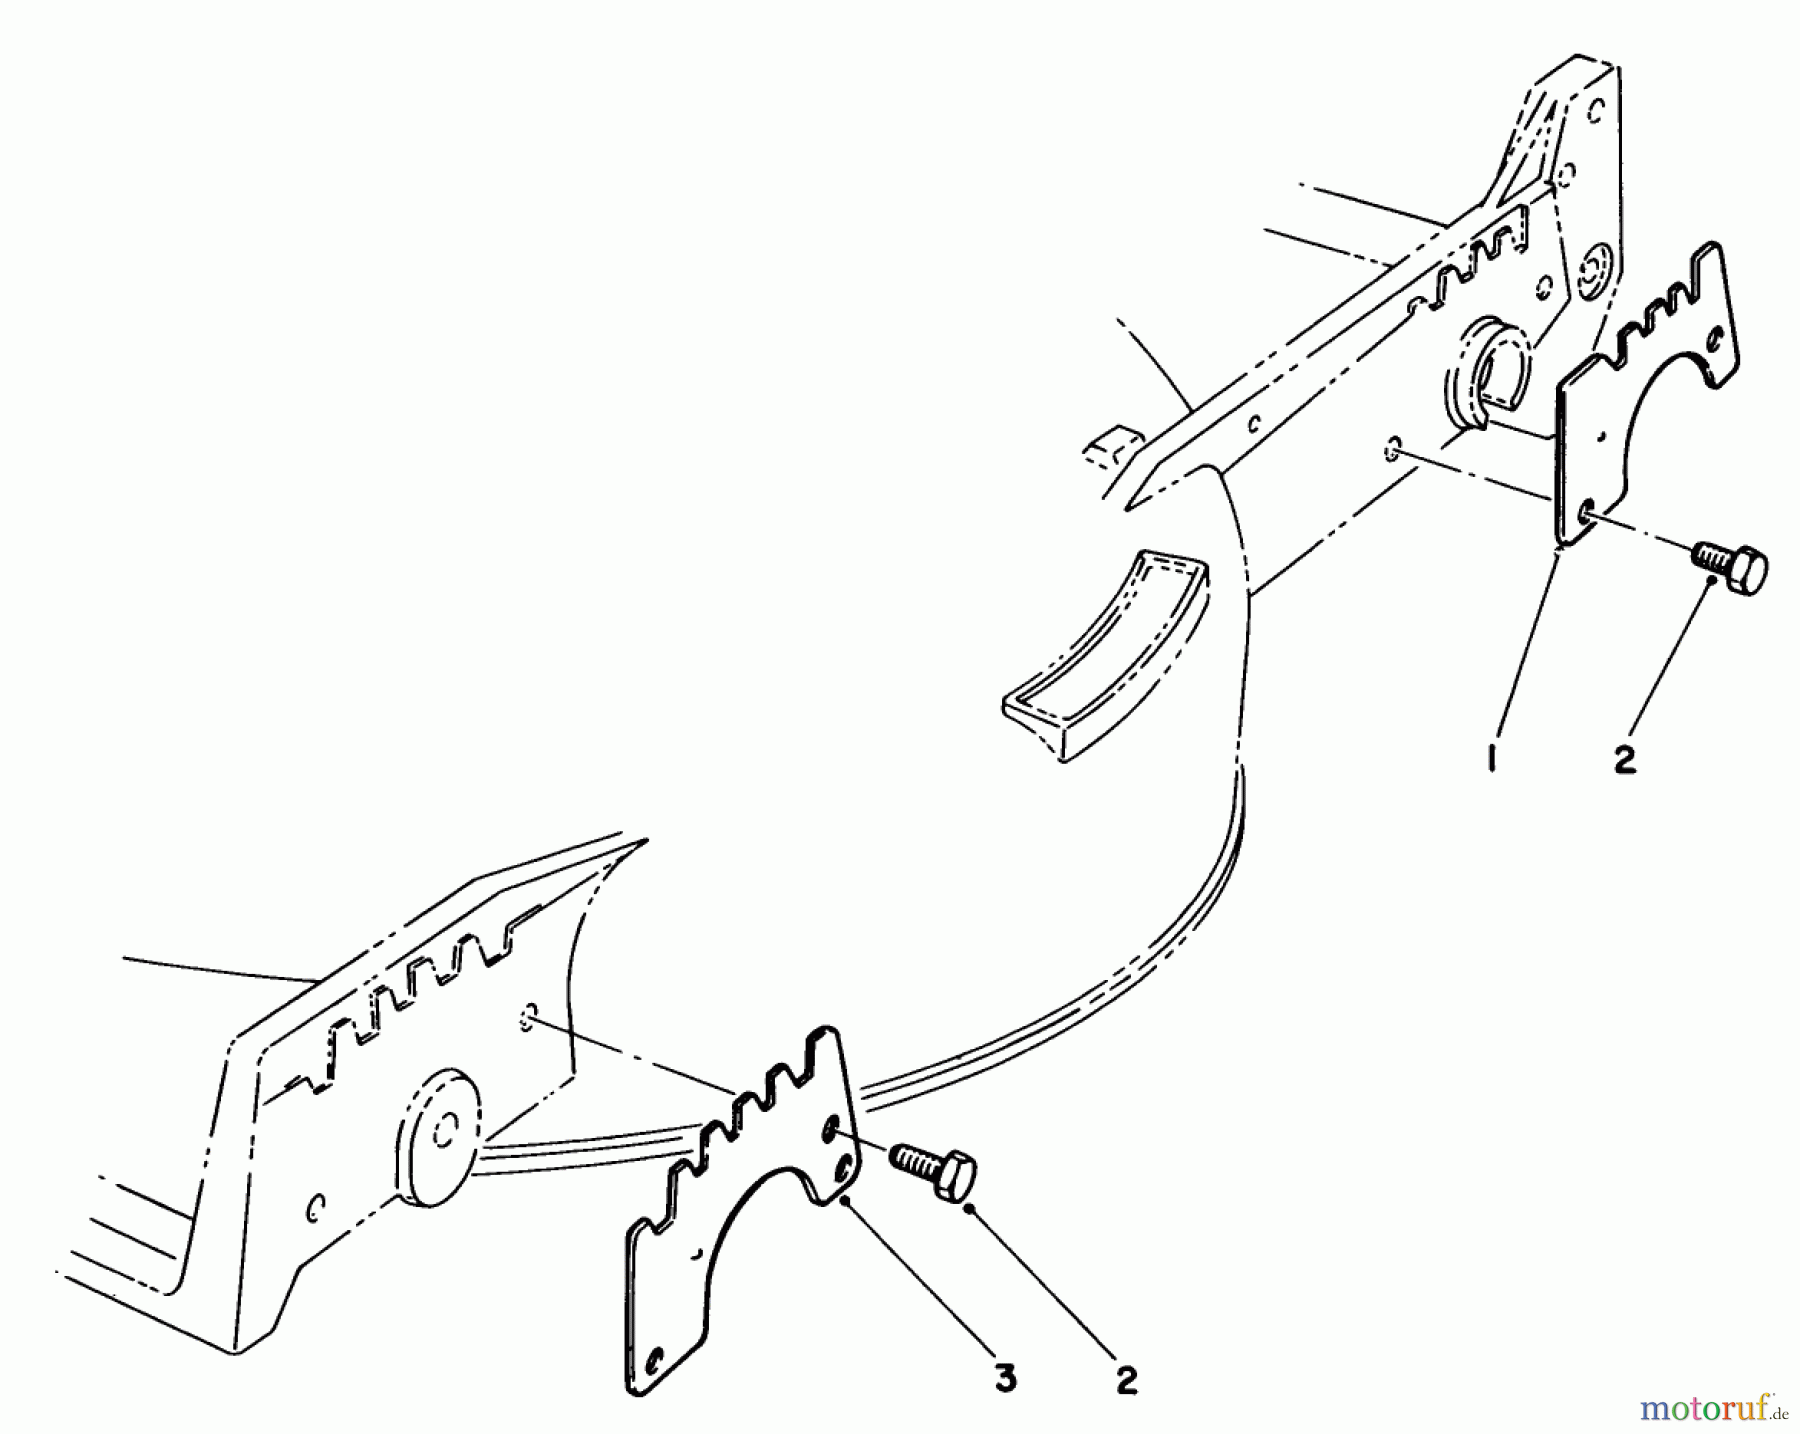  Toro Neu Mowers, Walk-Behind Seite 1 20672 - Toro Lawnmower, 1984 (4000001-4999999) WEAR PLATE KIT NO. 49-4080 (OPTIONAL)